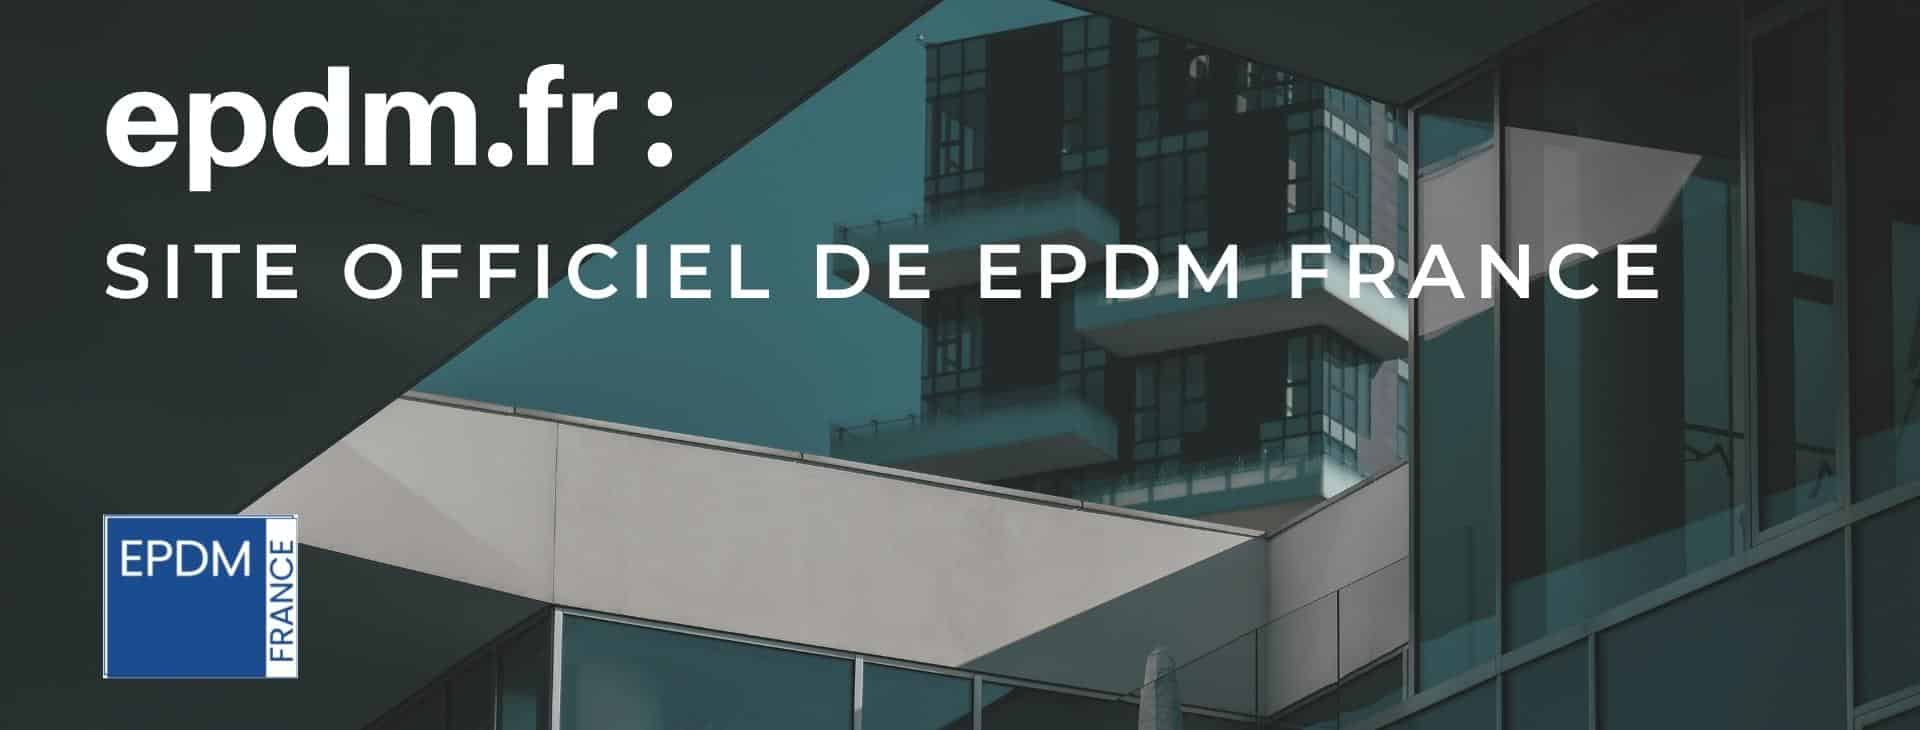 (c) Epdm.fr